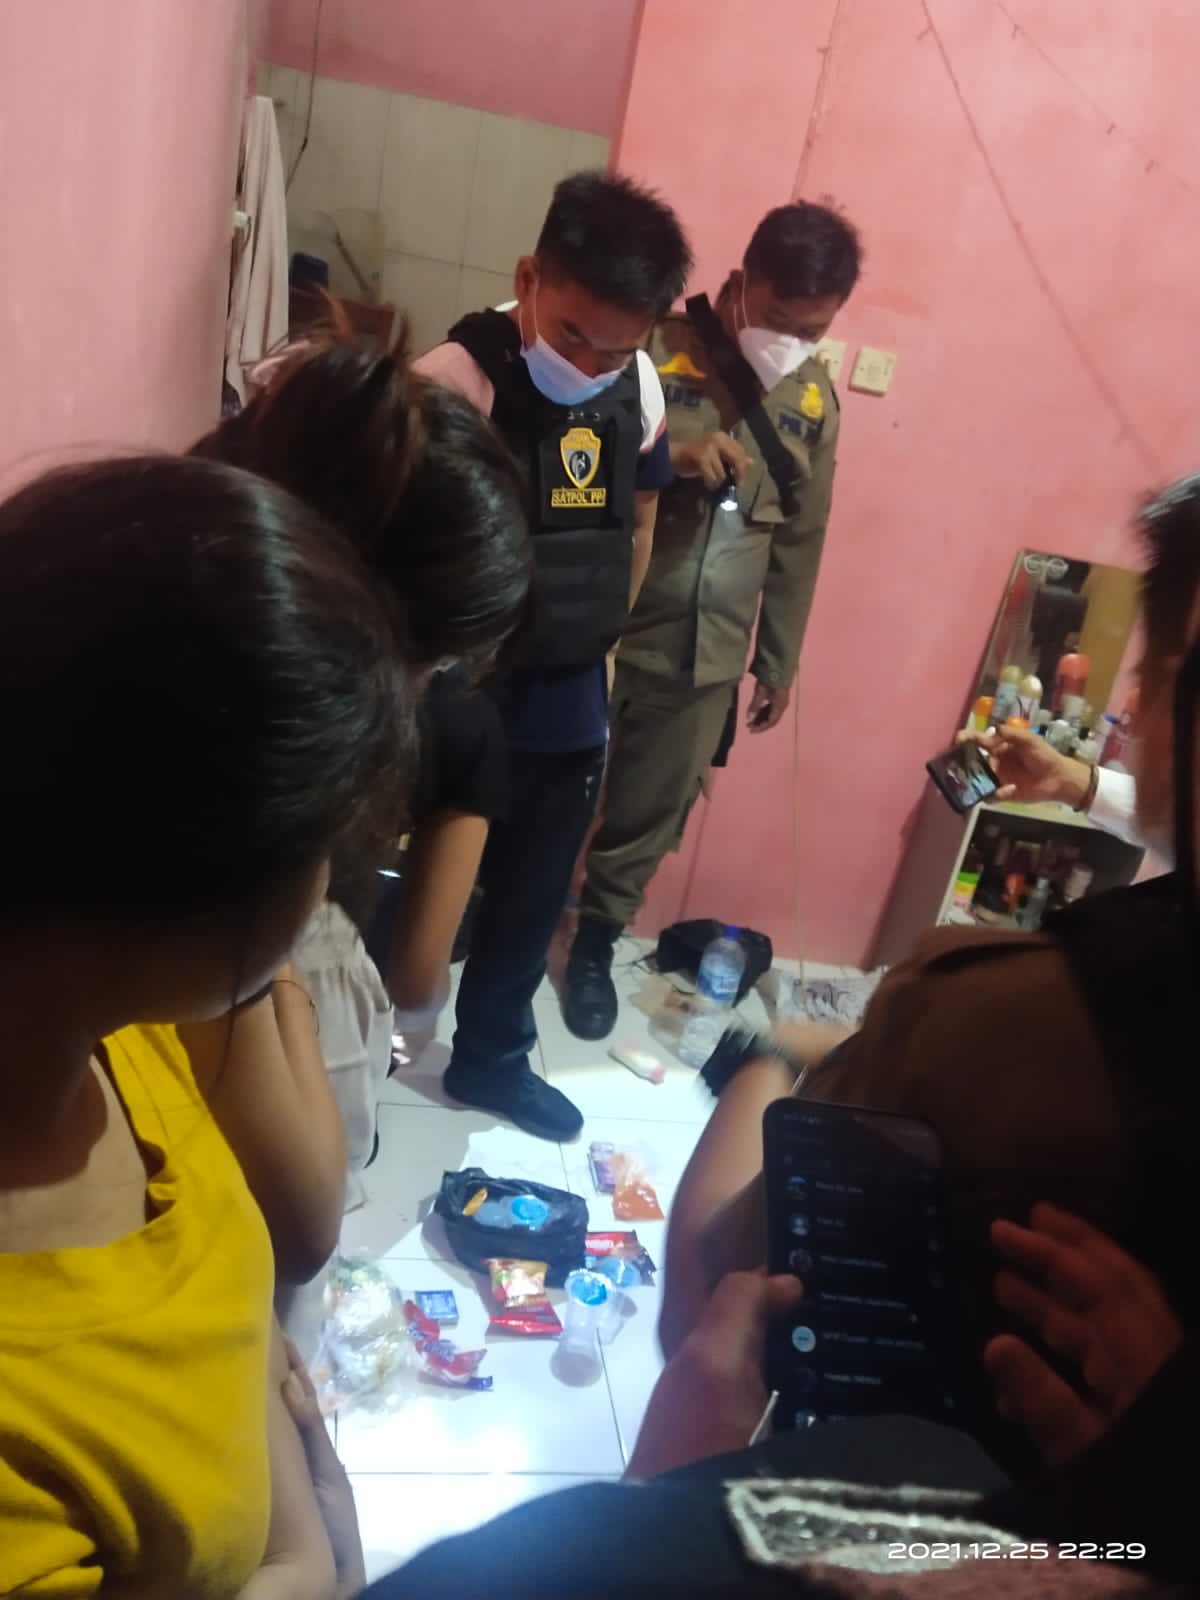 Satuan Polisi Pamong Praja (Satpol PP) Kota Tangerang Selatan kembali menggerebek salah satu indekos yang berlokasi di wilayah Lengkong Wetan, Serpong, Tangerang Selatan, Sabtu, 25 Desember 2021 malam.